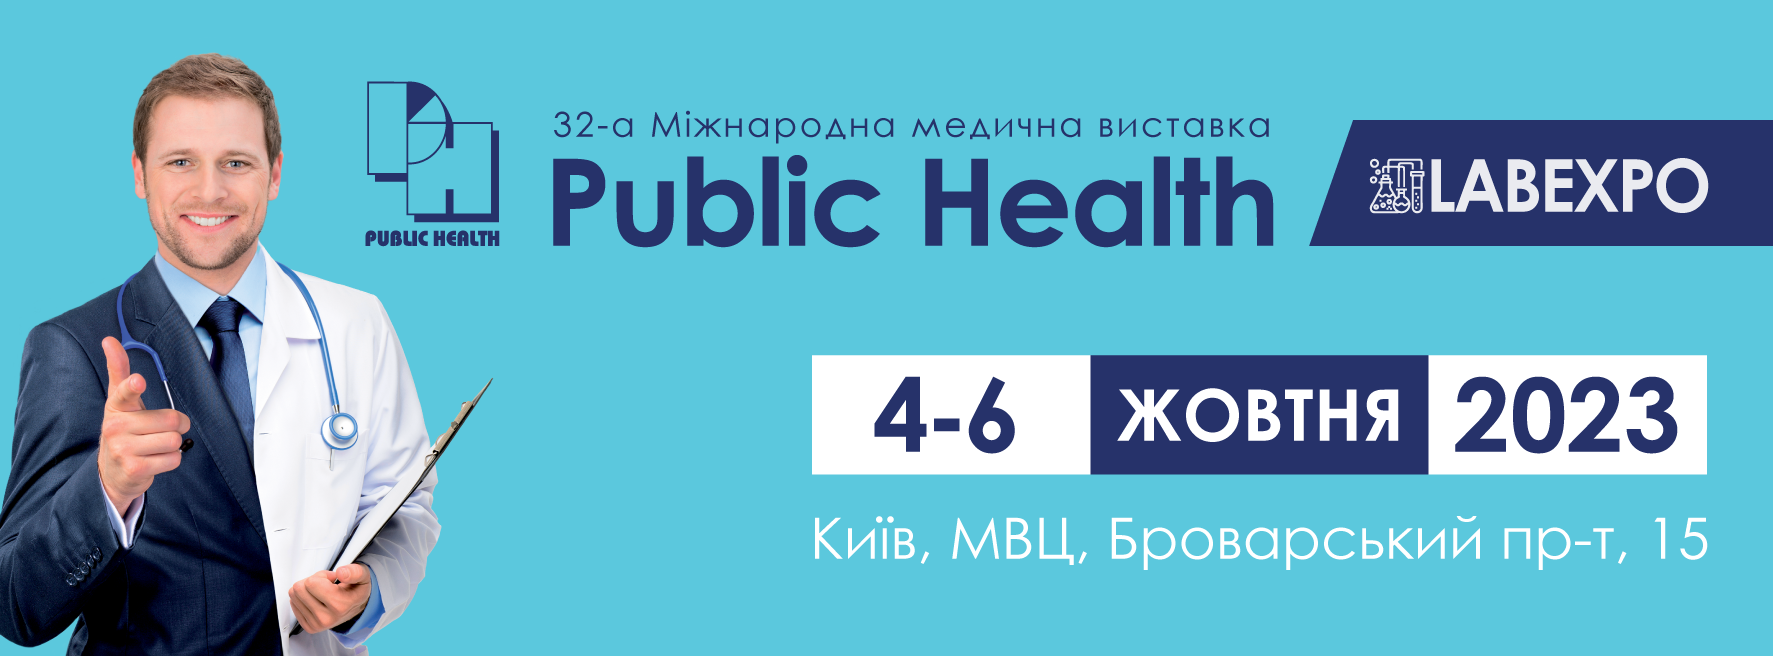 Public Health, 6-8 жовтня, Київ, МВЦ